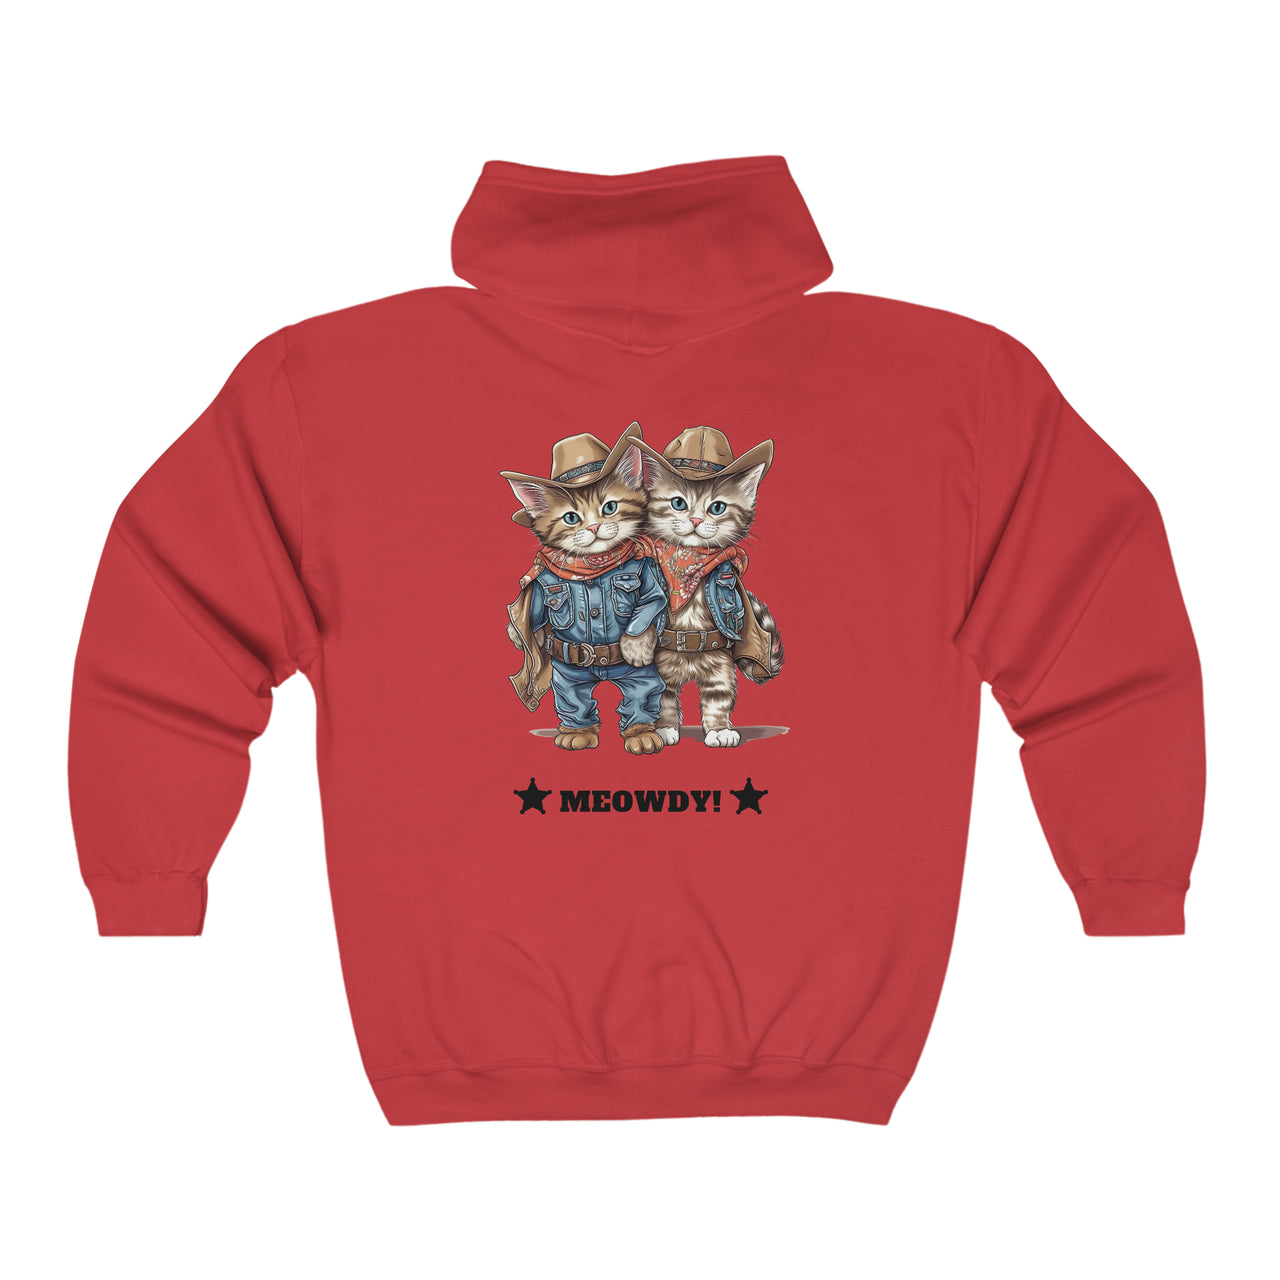 Meowdy Unisex Full Zip Hooded Sweatshirt Kittens Dressed as Cowboys-Red-Back